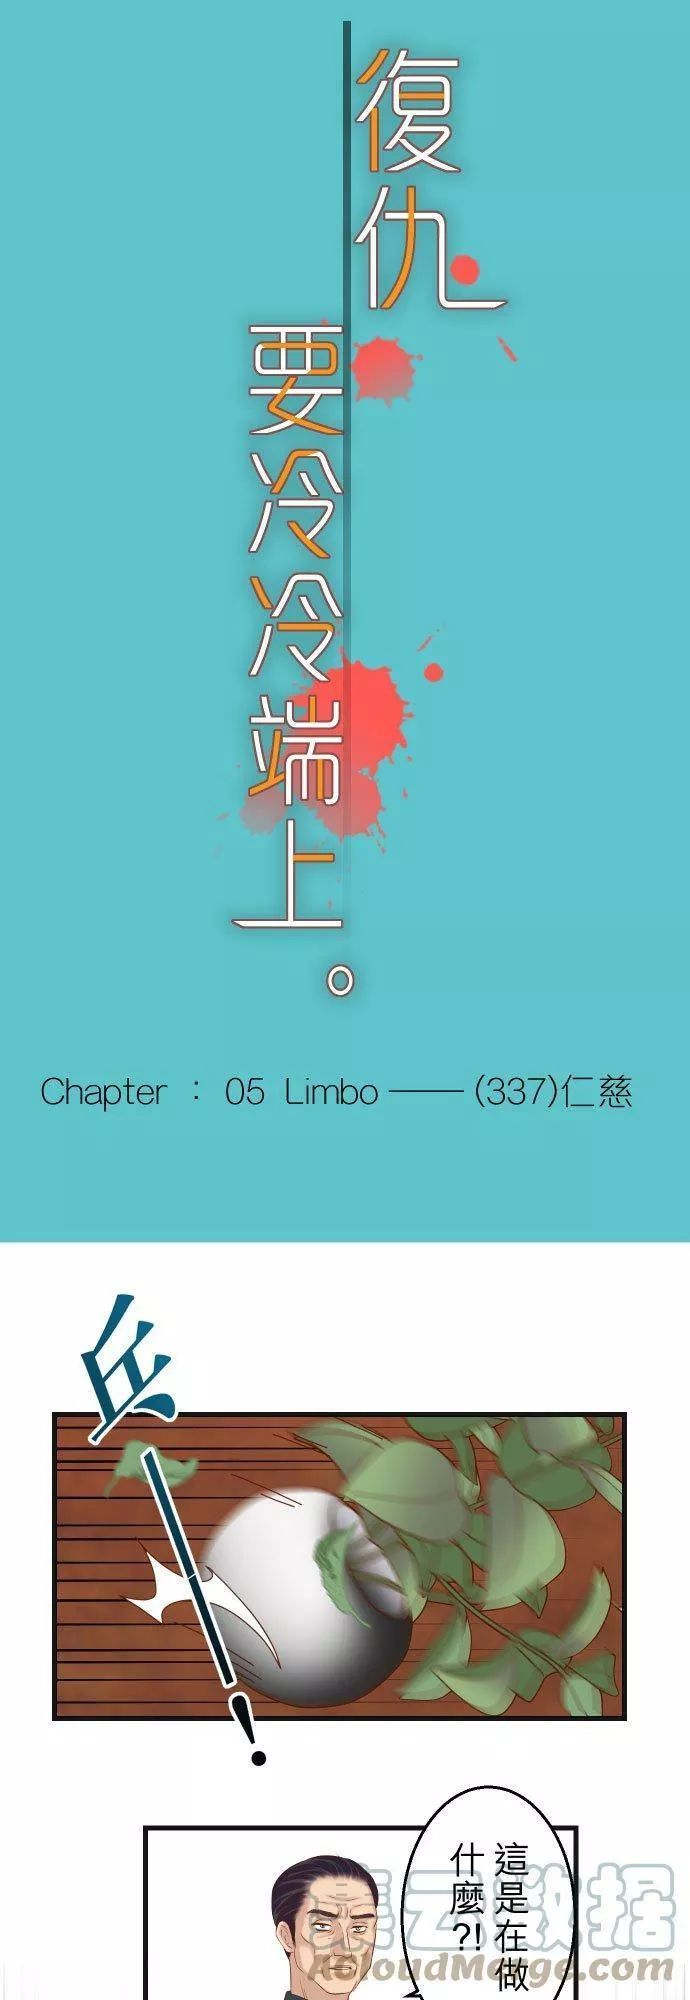 第五章 Limbo 337： 仁慈4